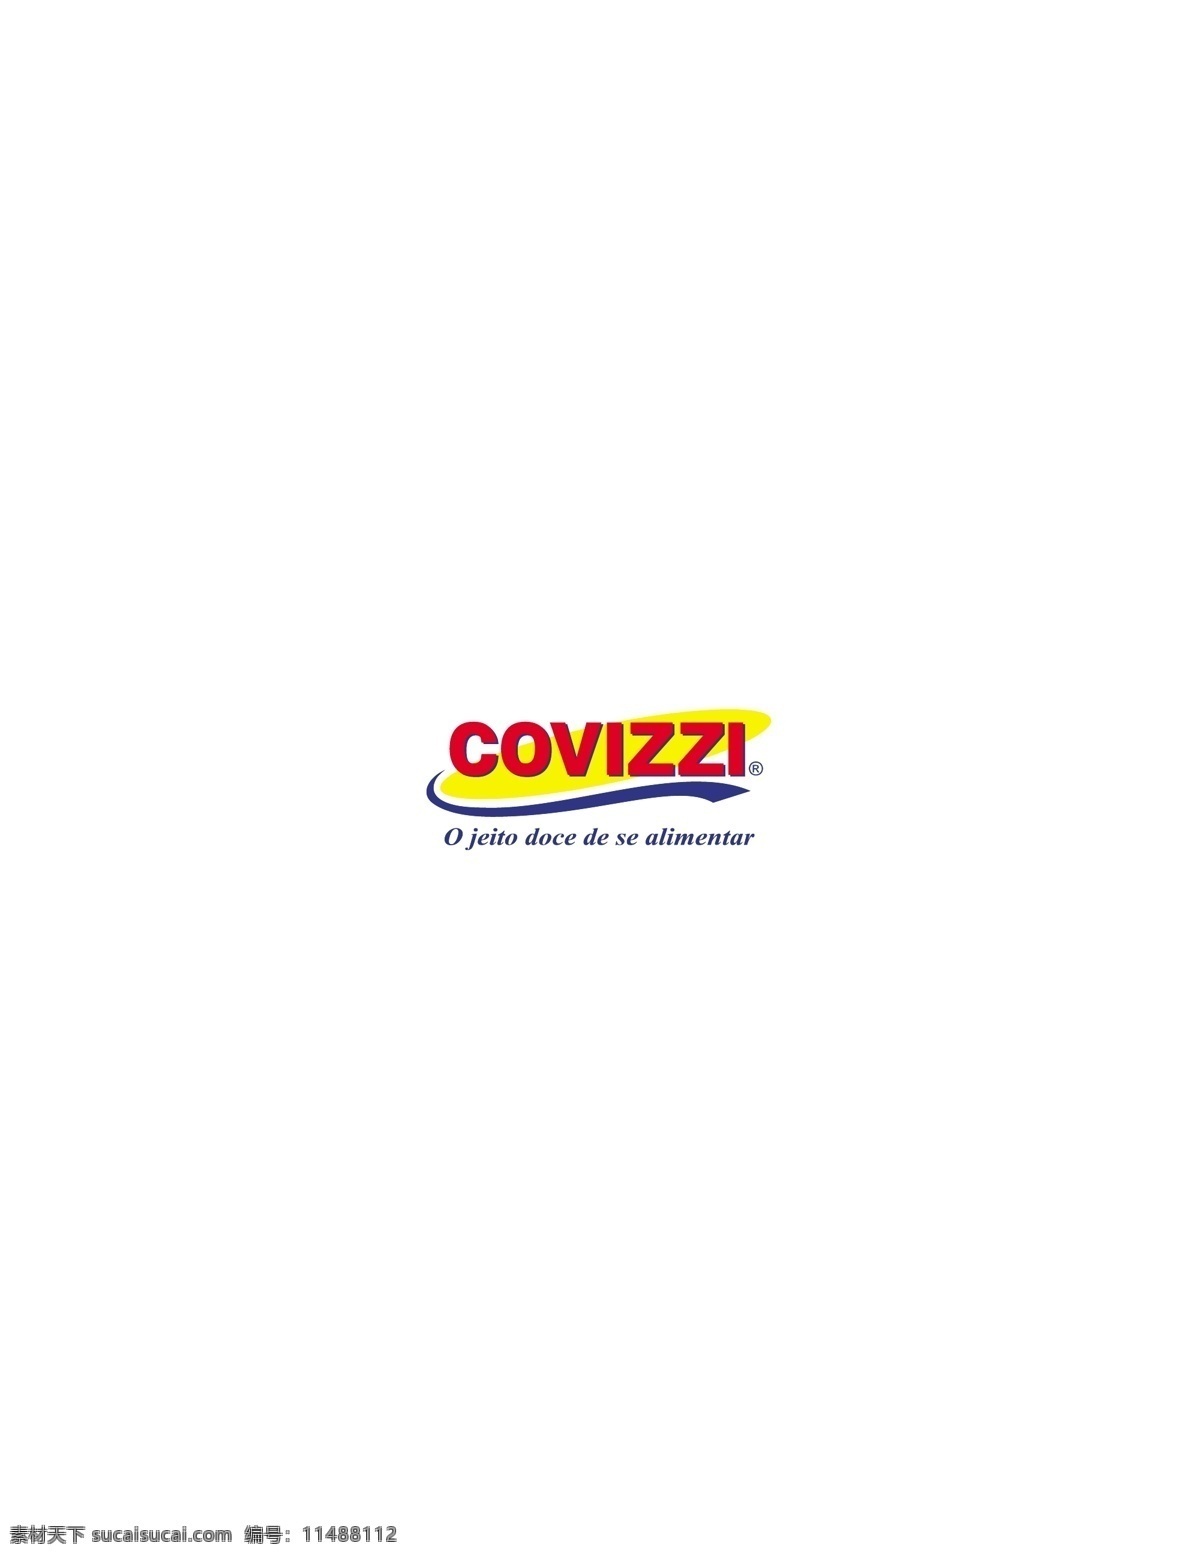 covizzi logo大全 logo 设计欣赏 商业矢量 矢量下载 知名 饮料 标志 标志设计 欣赏 网页矢量 矢量图 其他矢量图